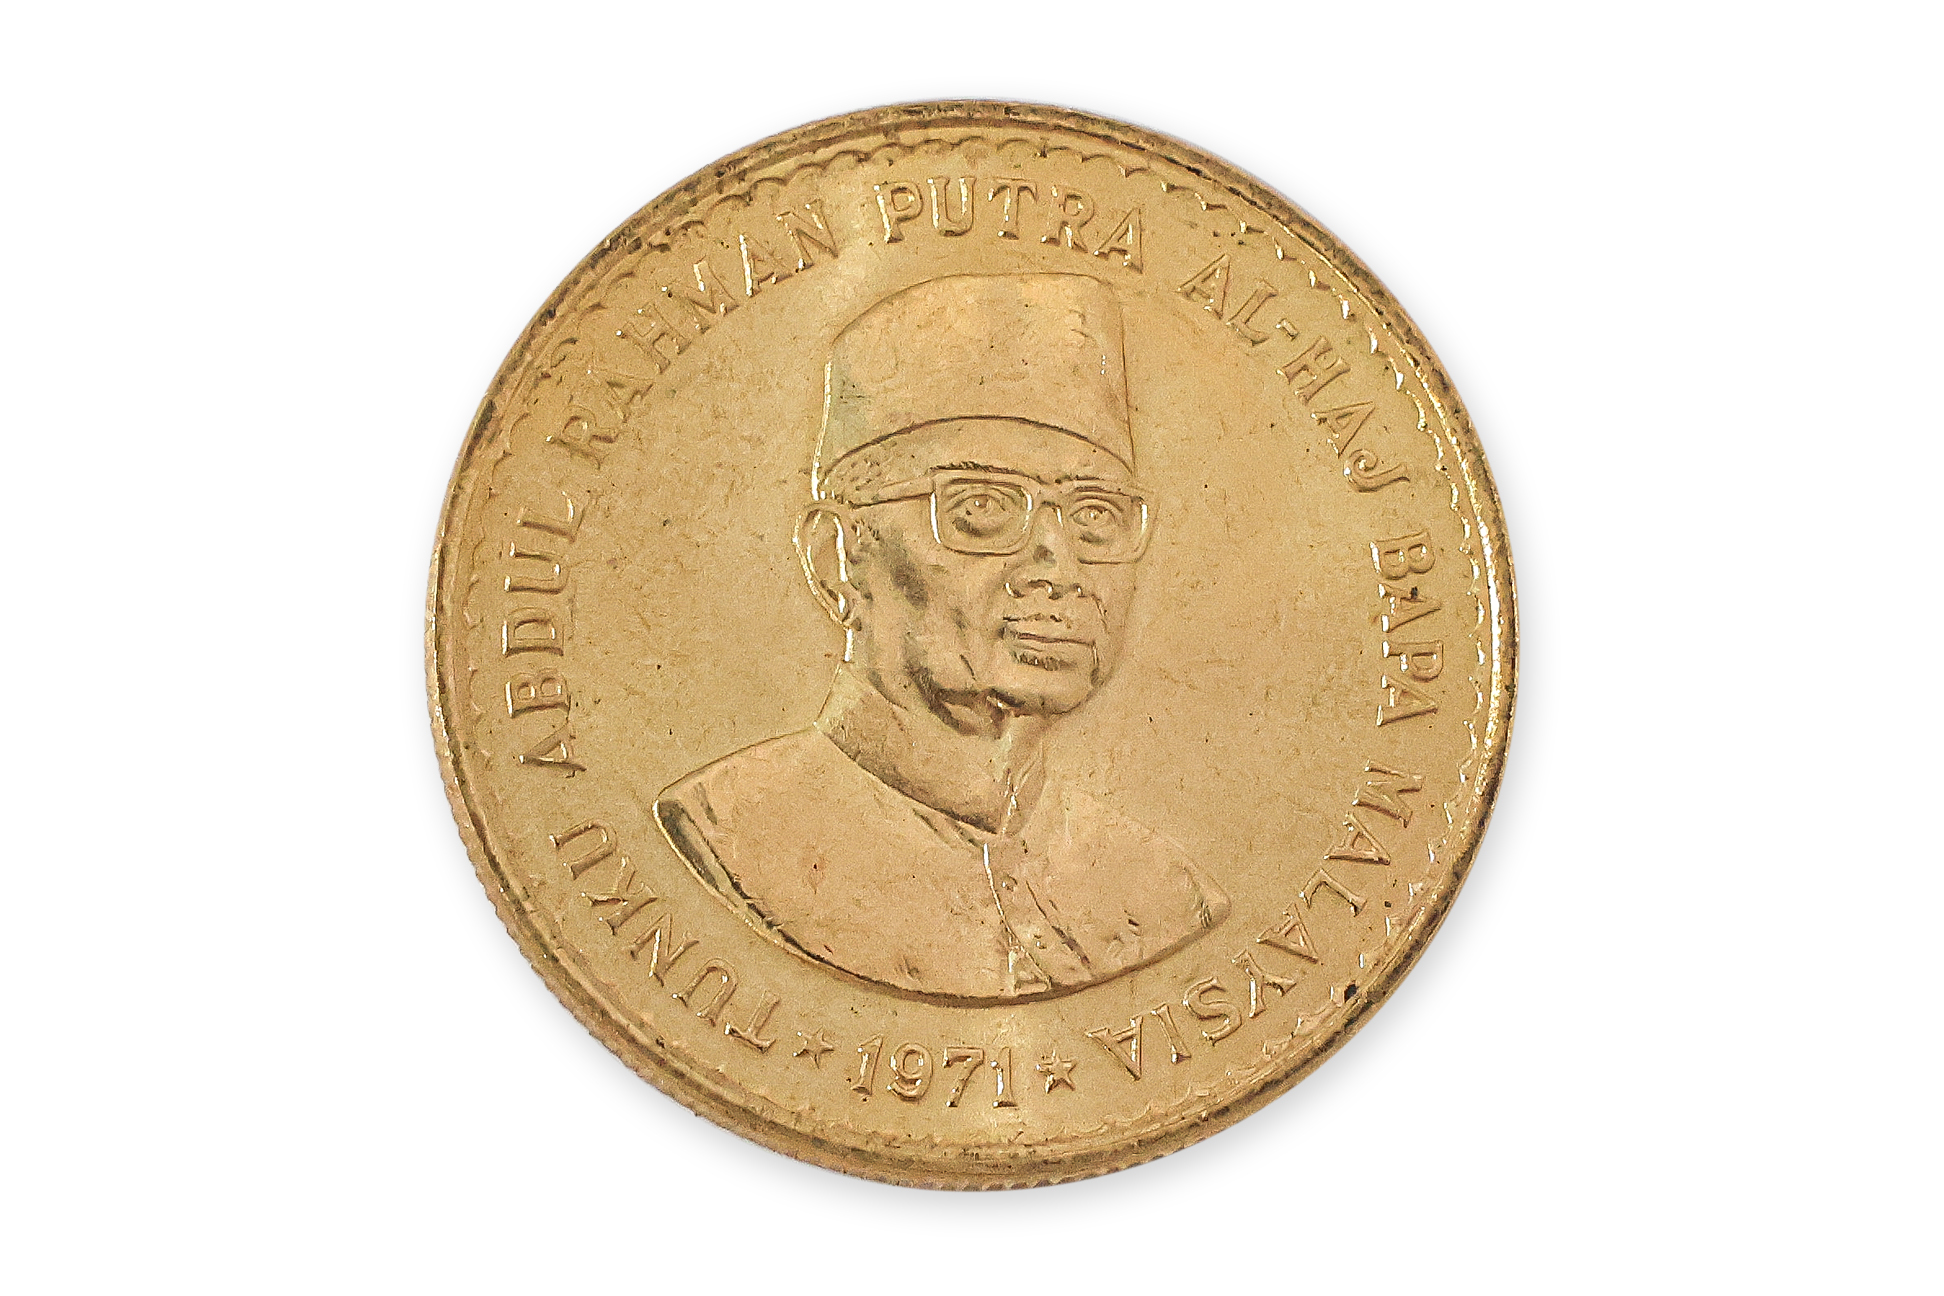 MALAYSIA 1971 TUNKU ABDUL RAHMAN 100 RINGGIT GOLD COIN